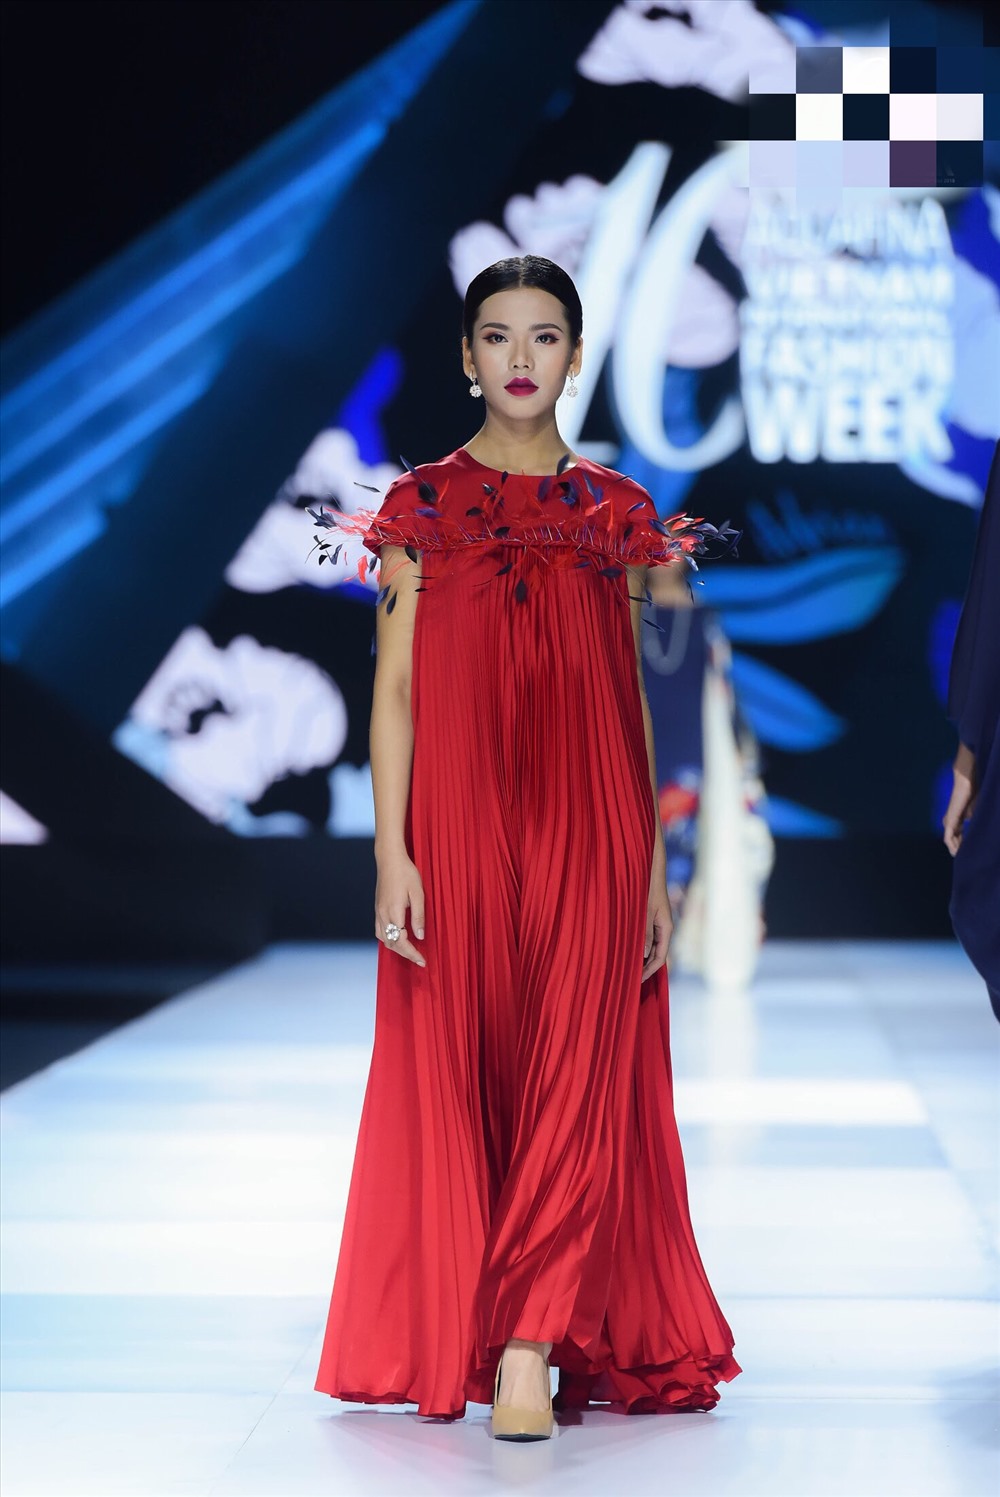 Đỗ Minh Tâm, một thí sinh top 60 của Hoa hậu Hoàn vũ Việt Nam 2019 thể hiện trang phục màu đỏ trầm ấm của những tia nắng hoàng hôn sau rặng núi là những màu chủ đạo trong bộ sưu tập lần này.